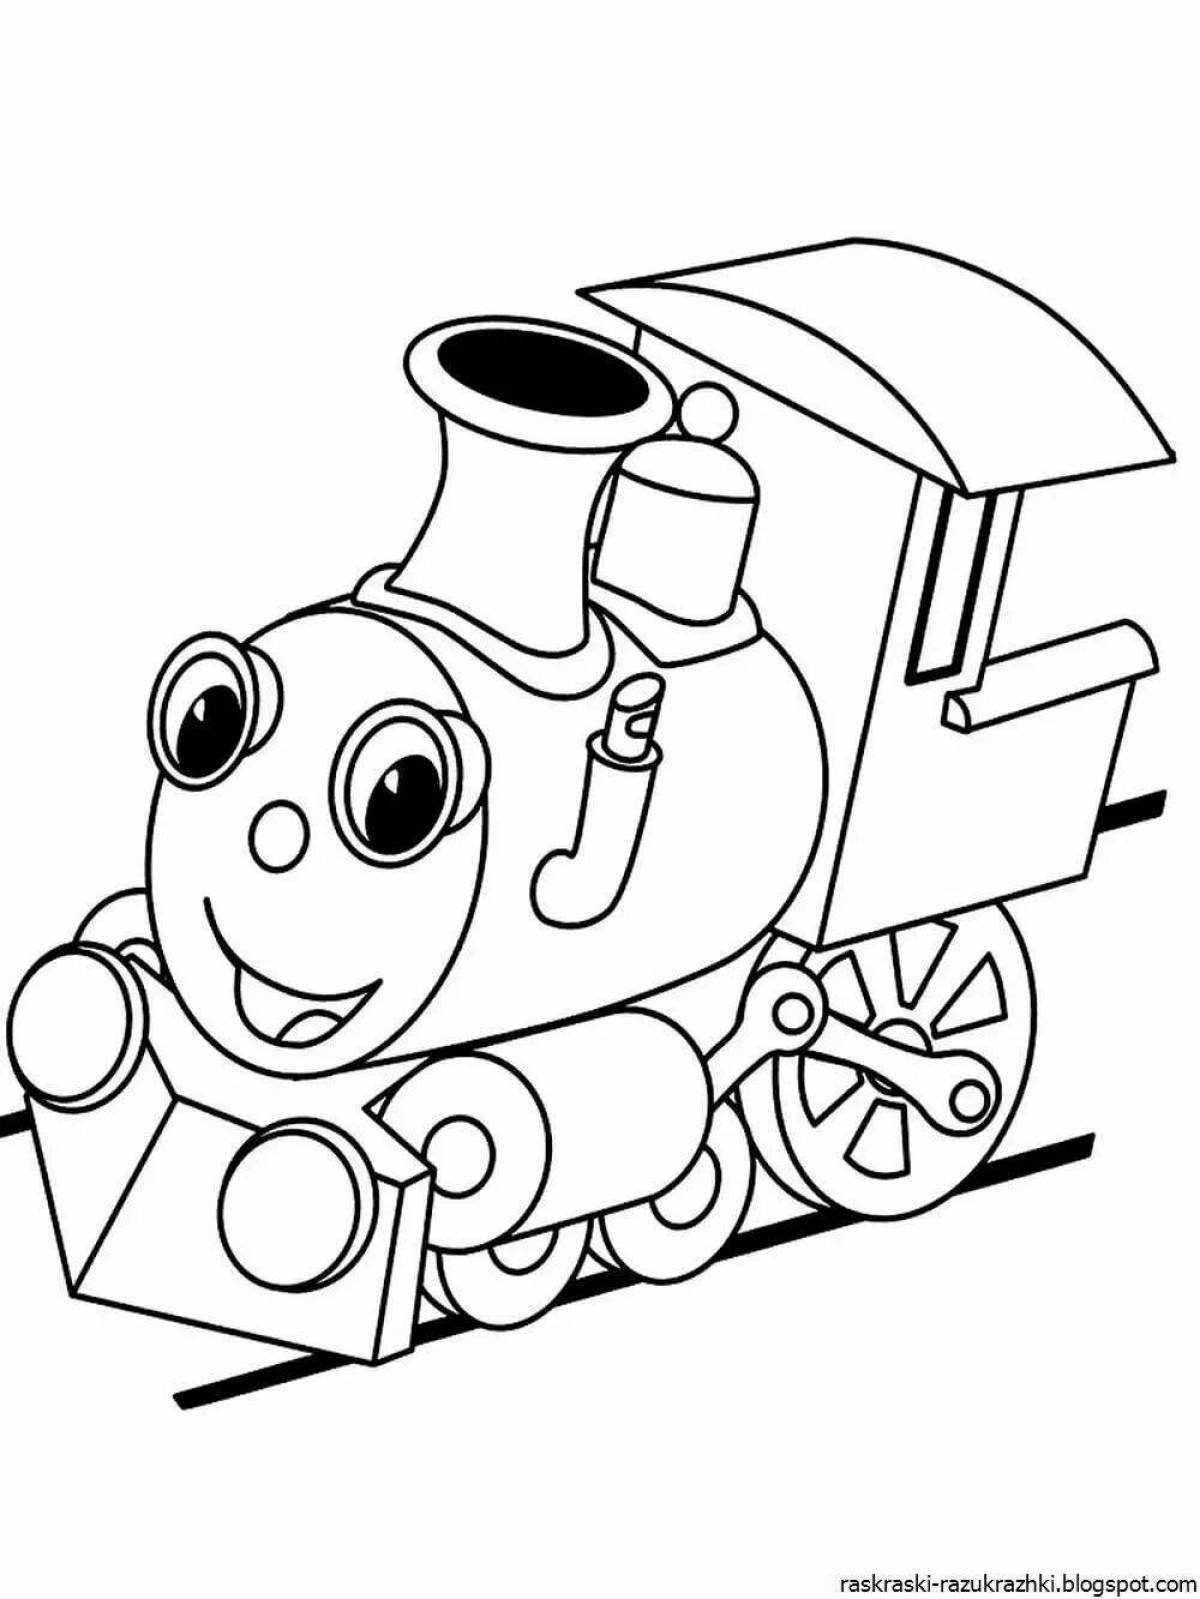 Увлекательная раскраска поезда для детей 3-4 лет